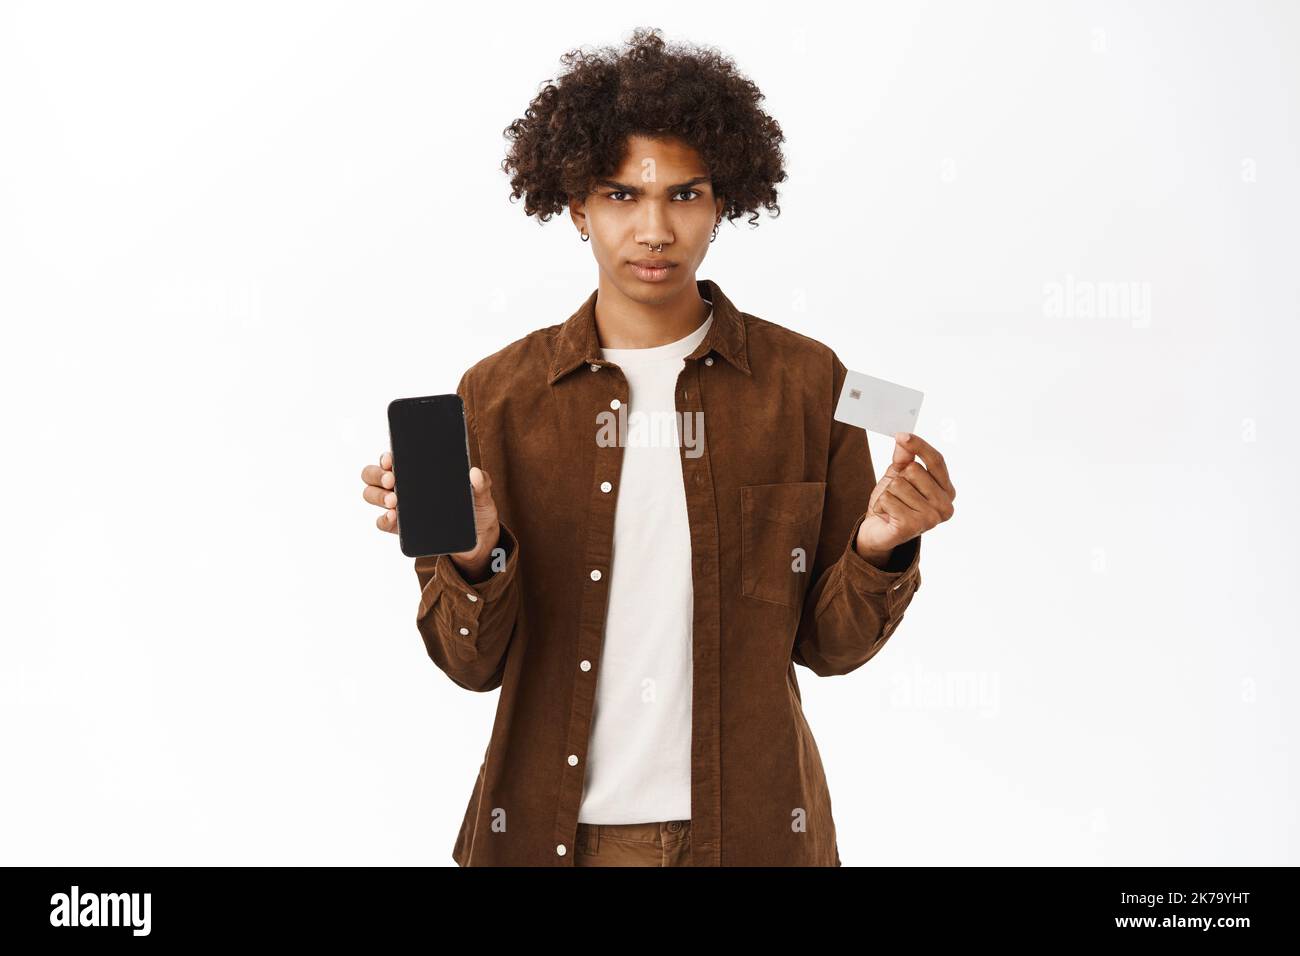 Portrait d'un homme hispanique choqué montre carte de crédit et téléphone mobile, application écran, debout dans des vêtements décontractés sur fond blanc Banque D'Images